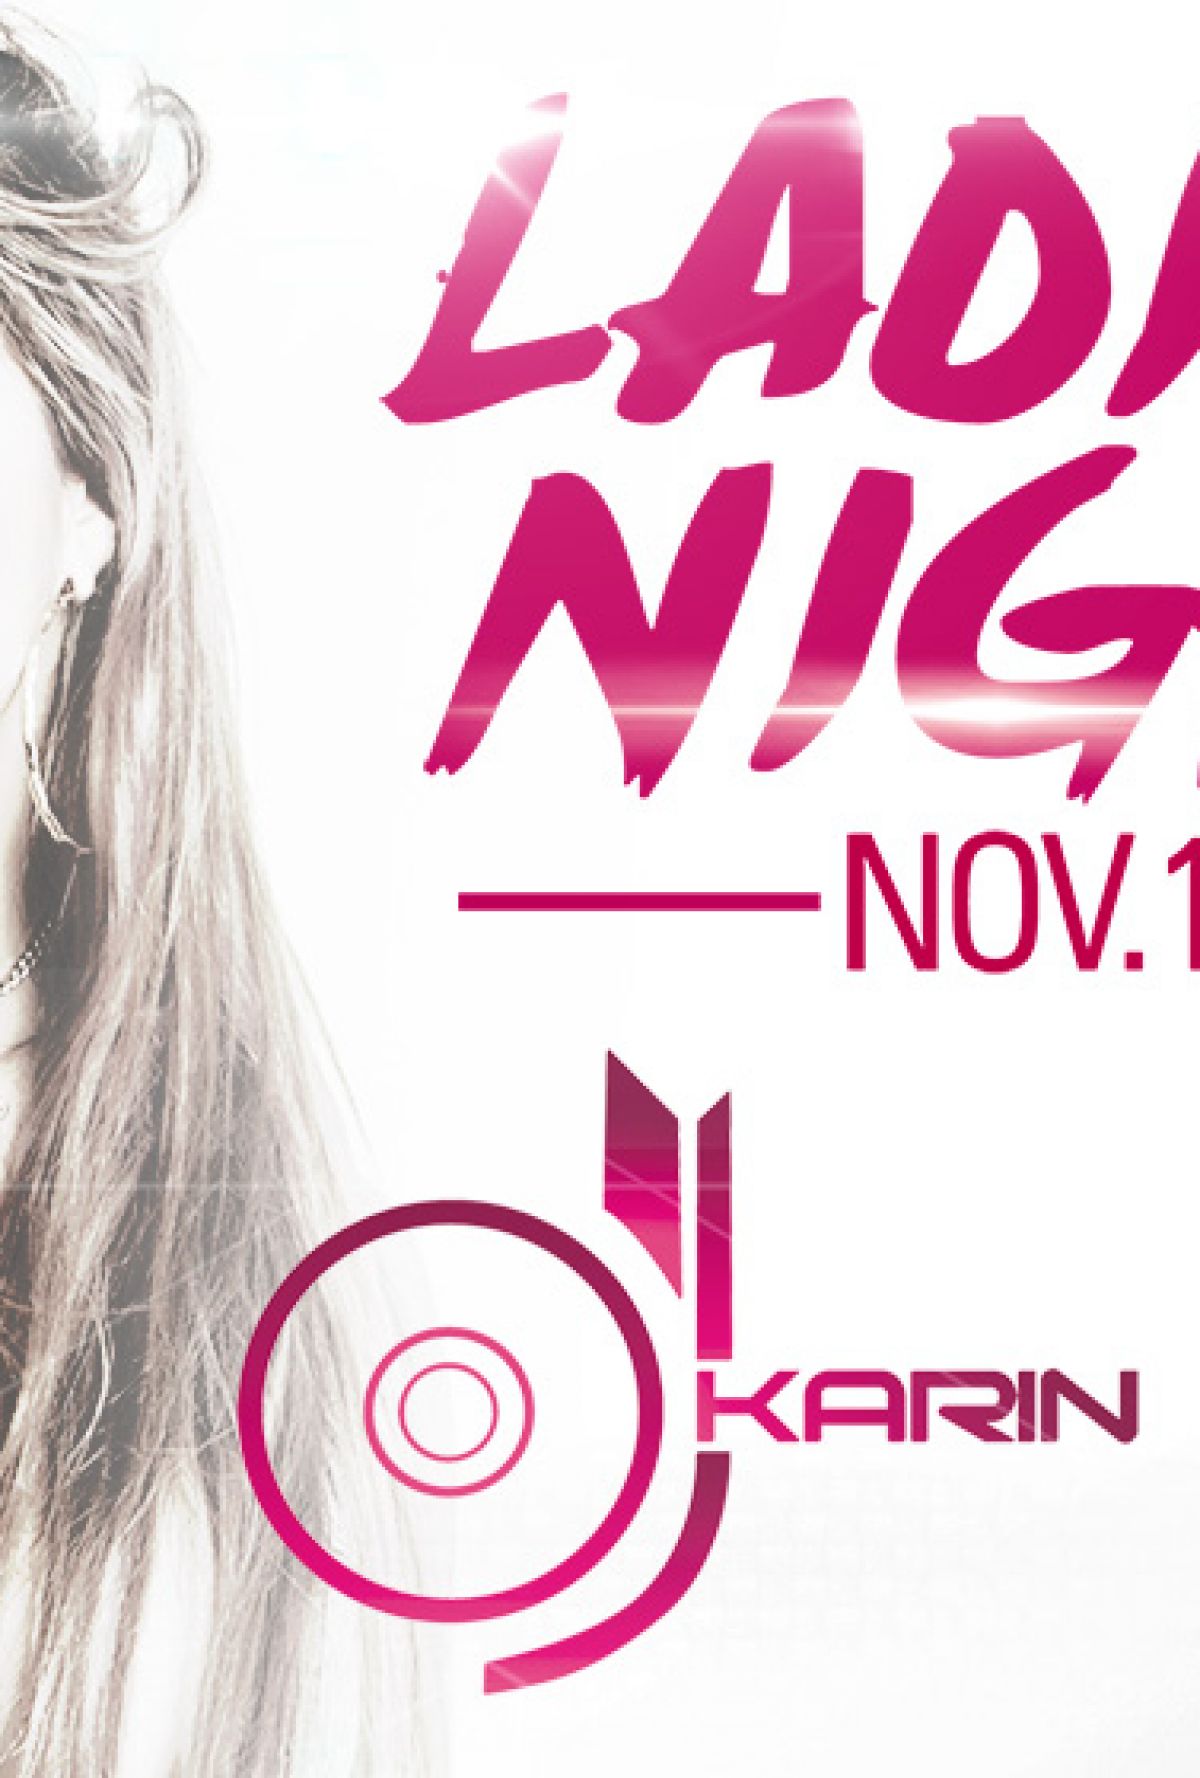 LADIES NIGHT - DJ KARIN